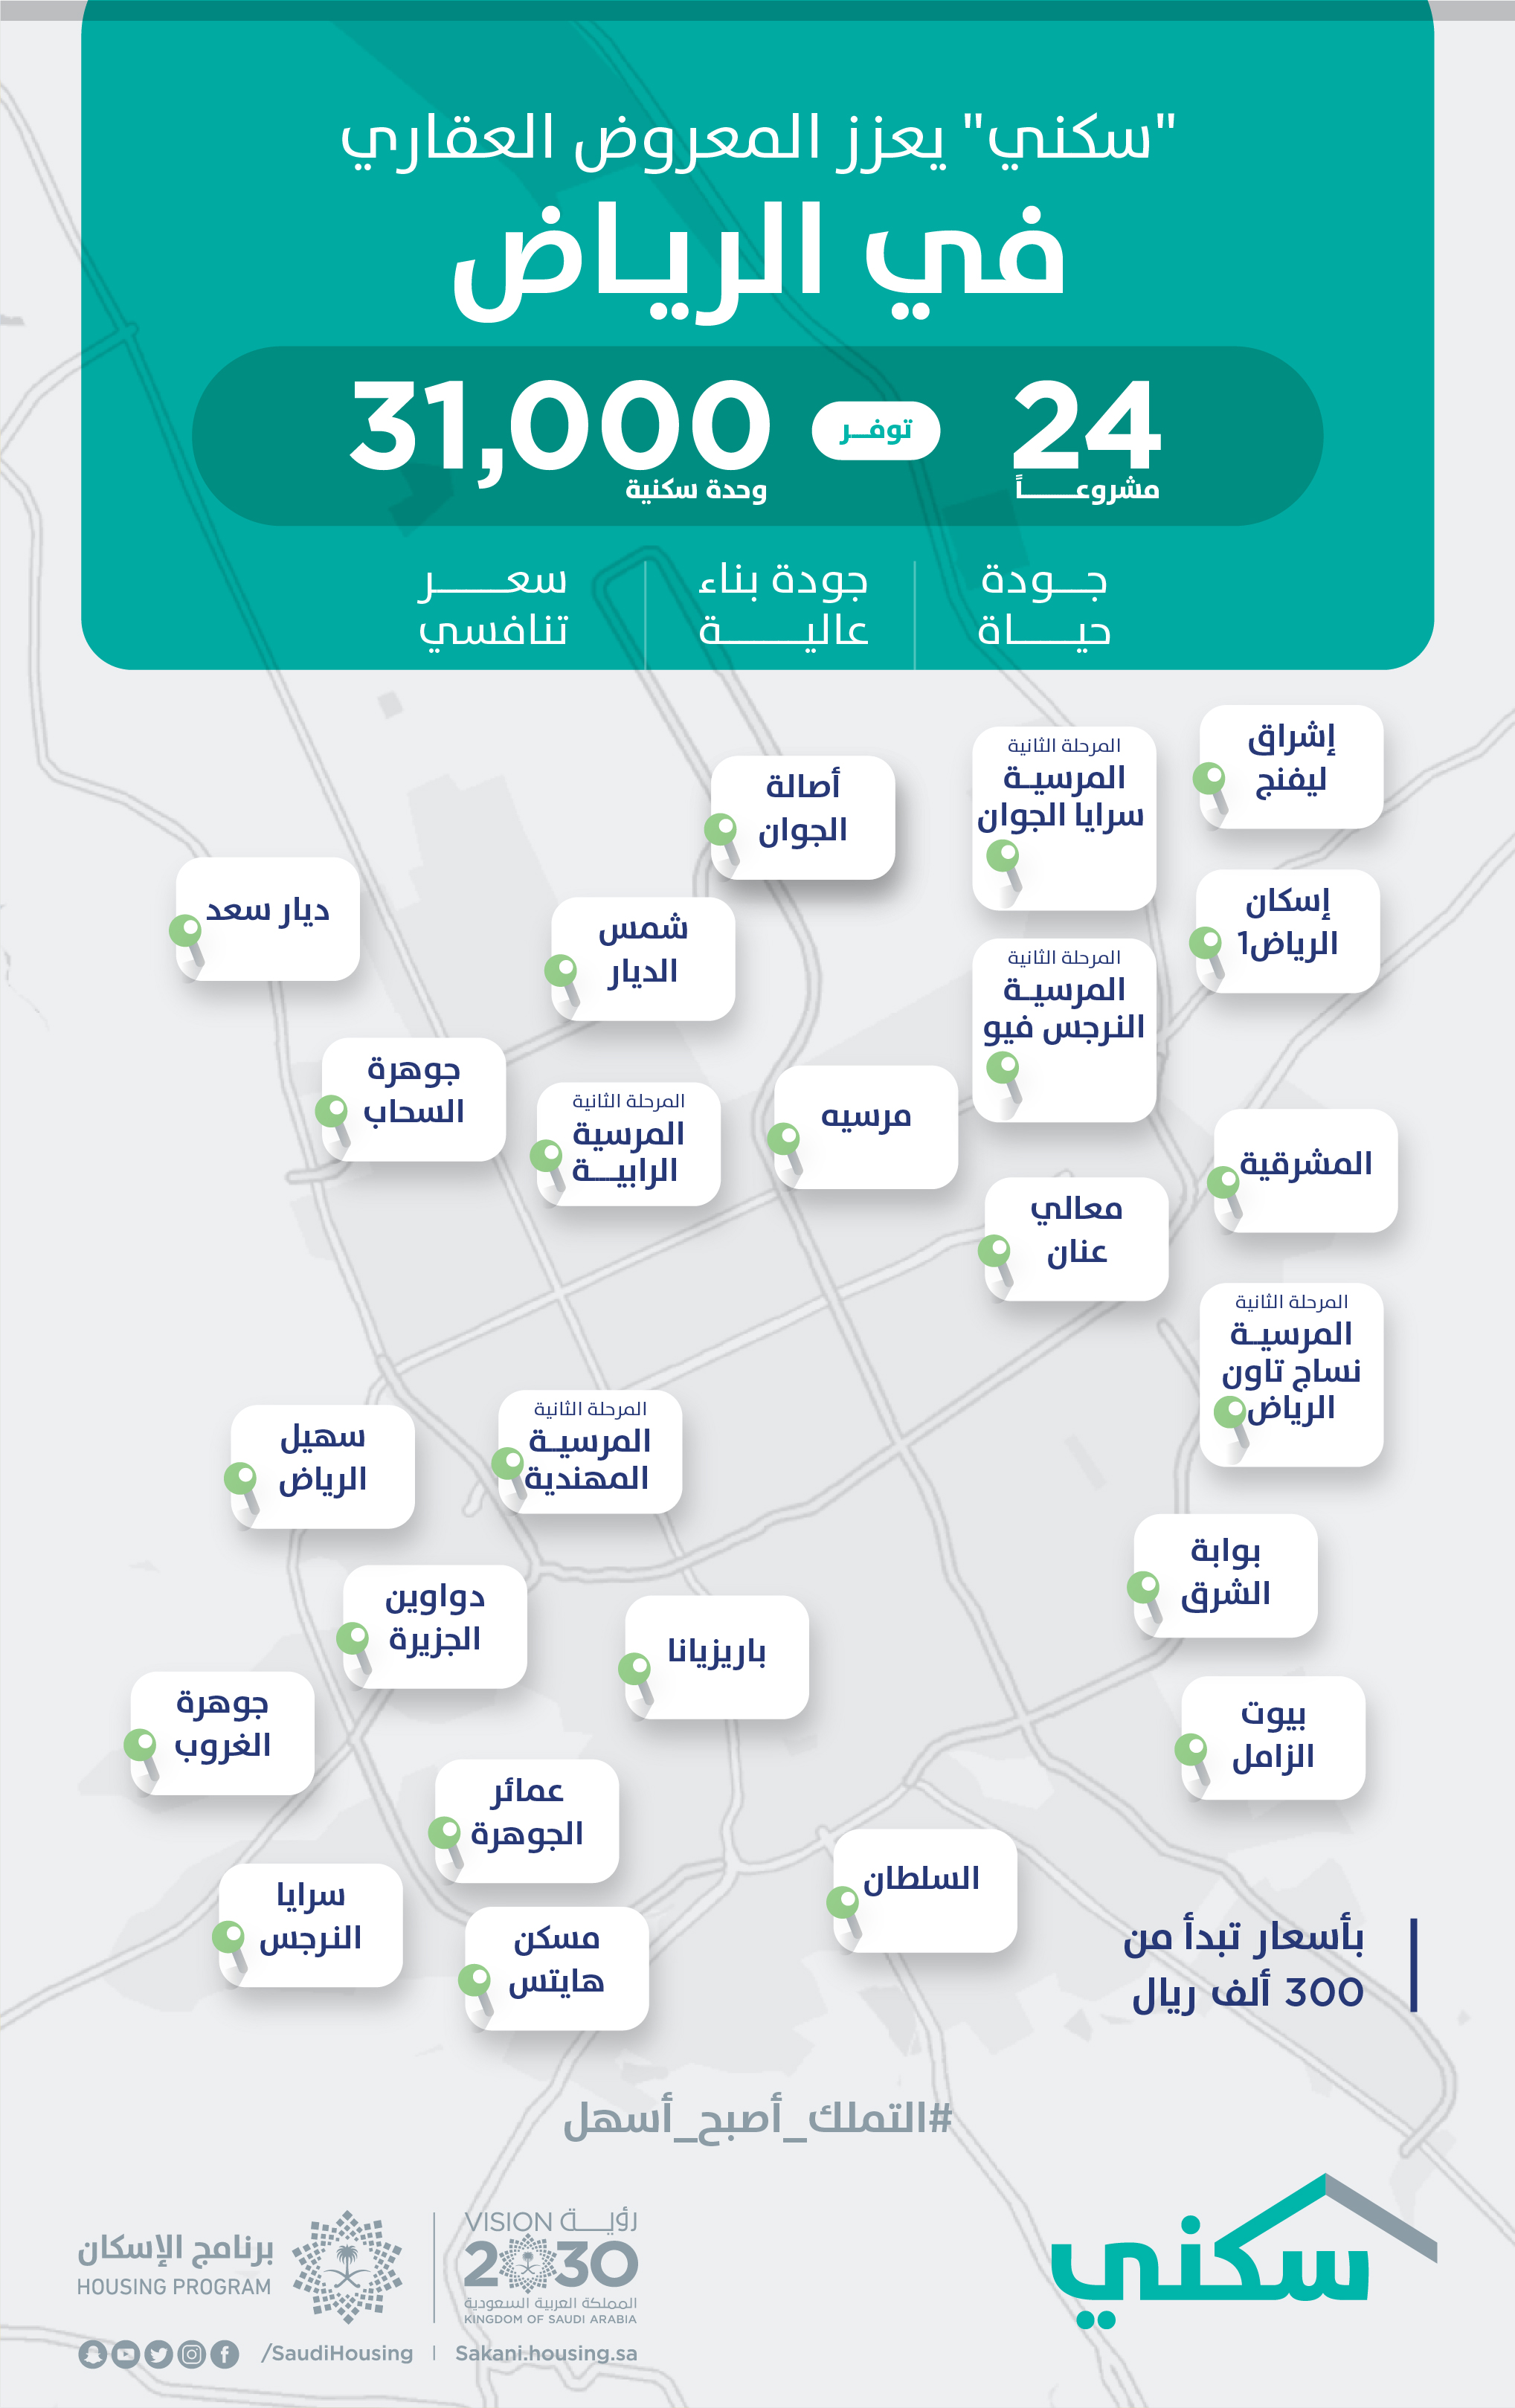 مشاريع "سكني" في مدينة الرياض تسجّل نسب إنجاز عالية تصل إلى 100%